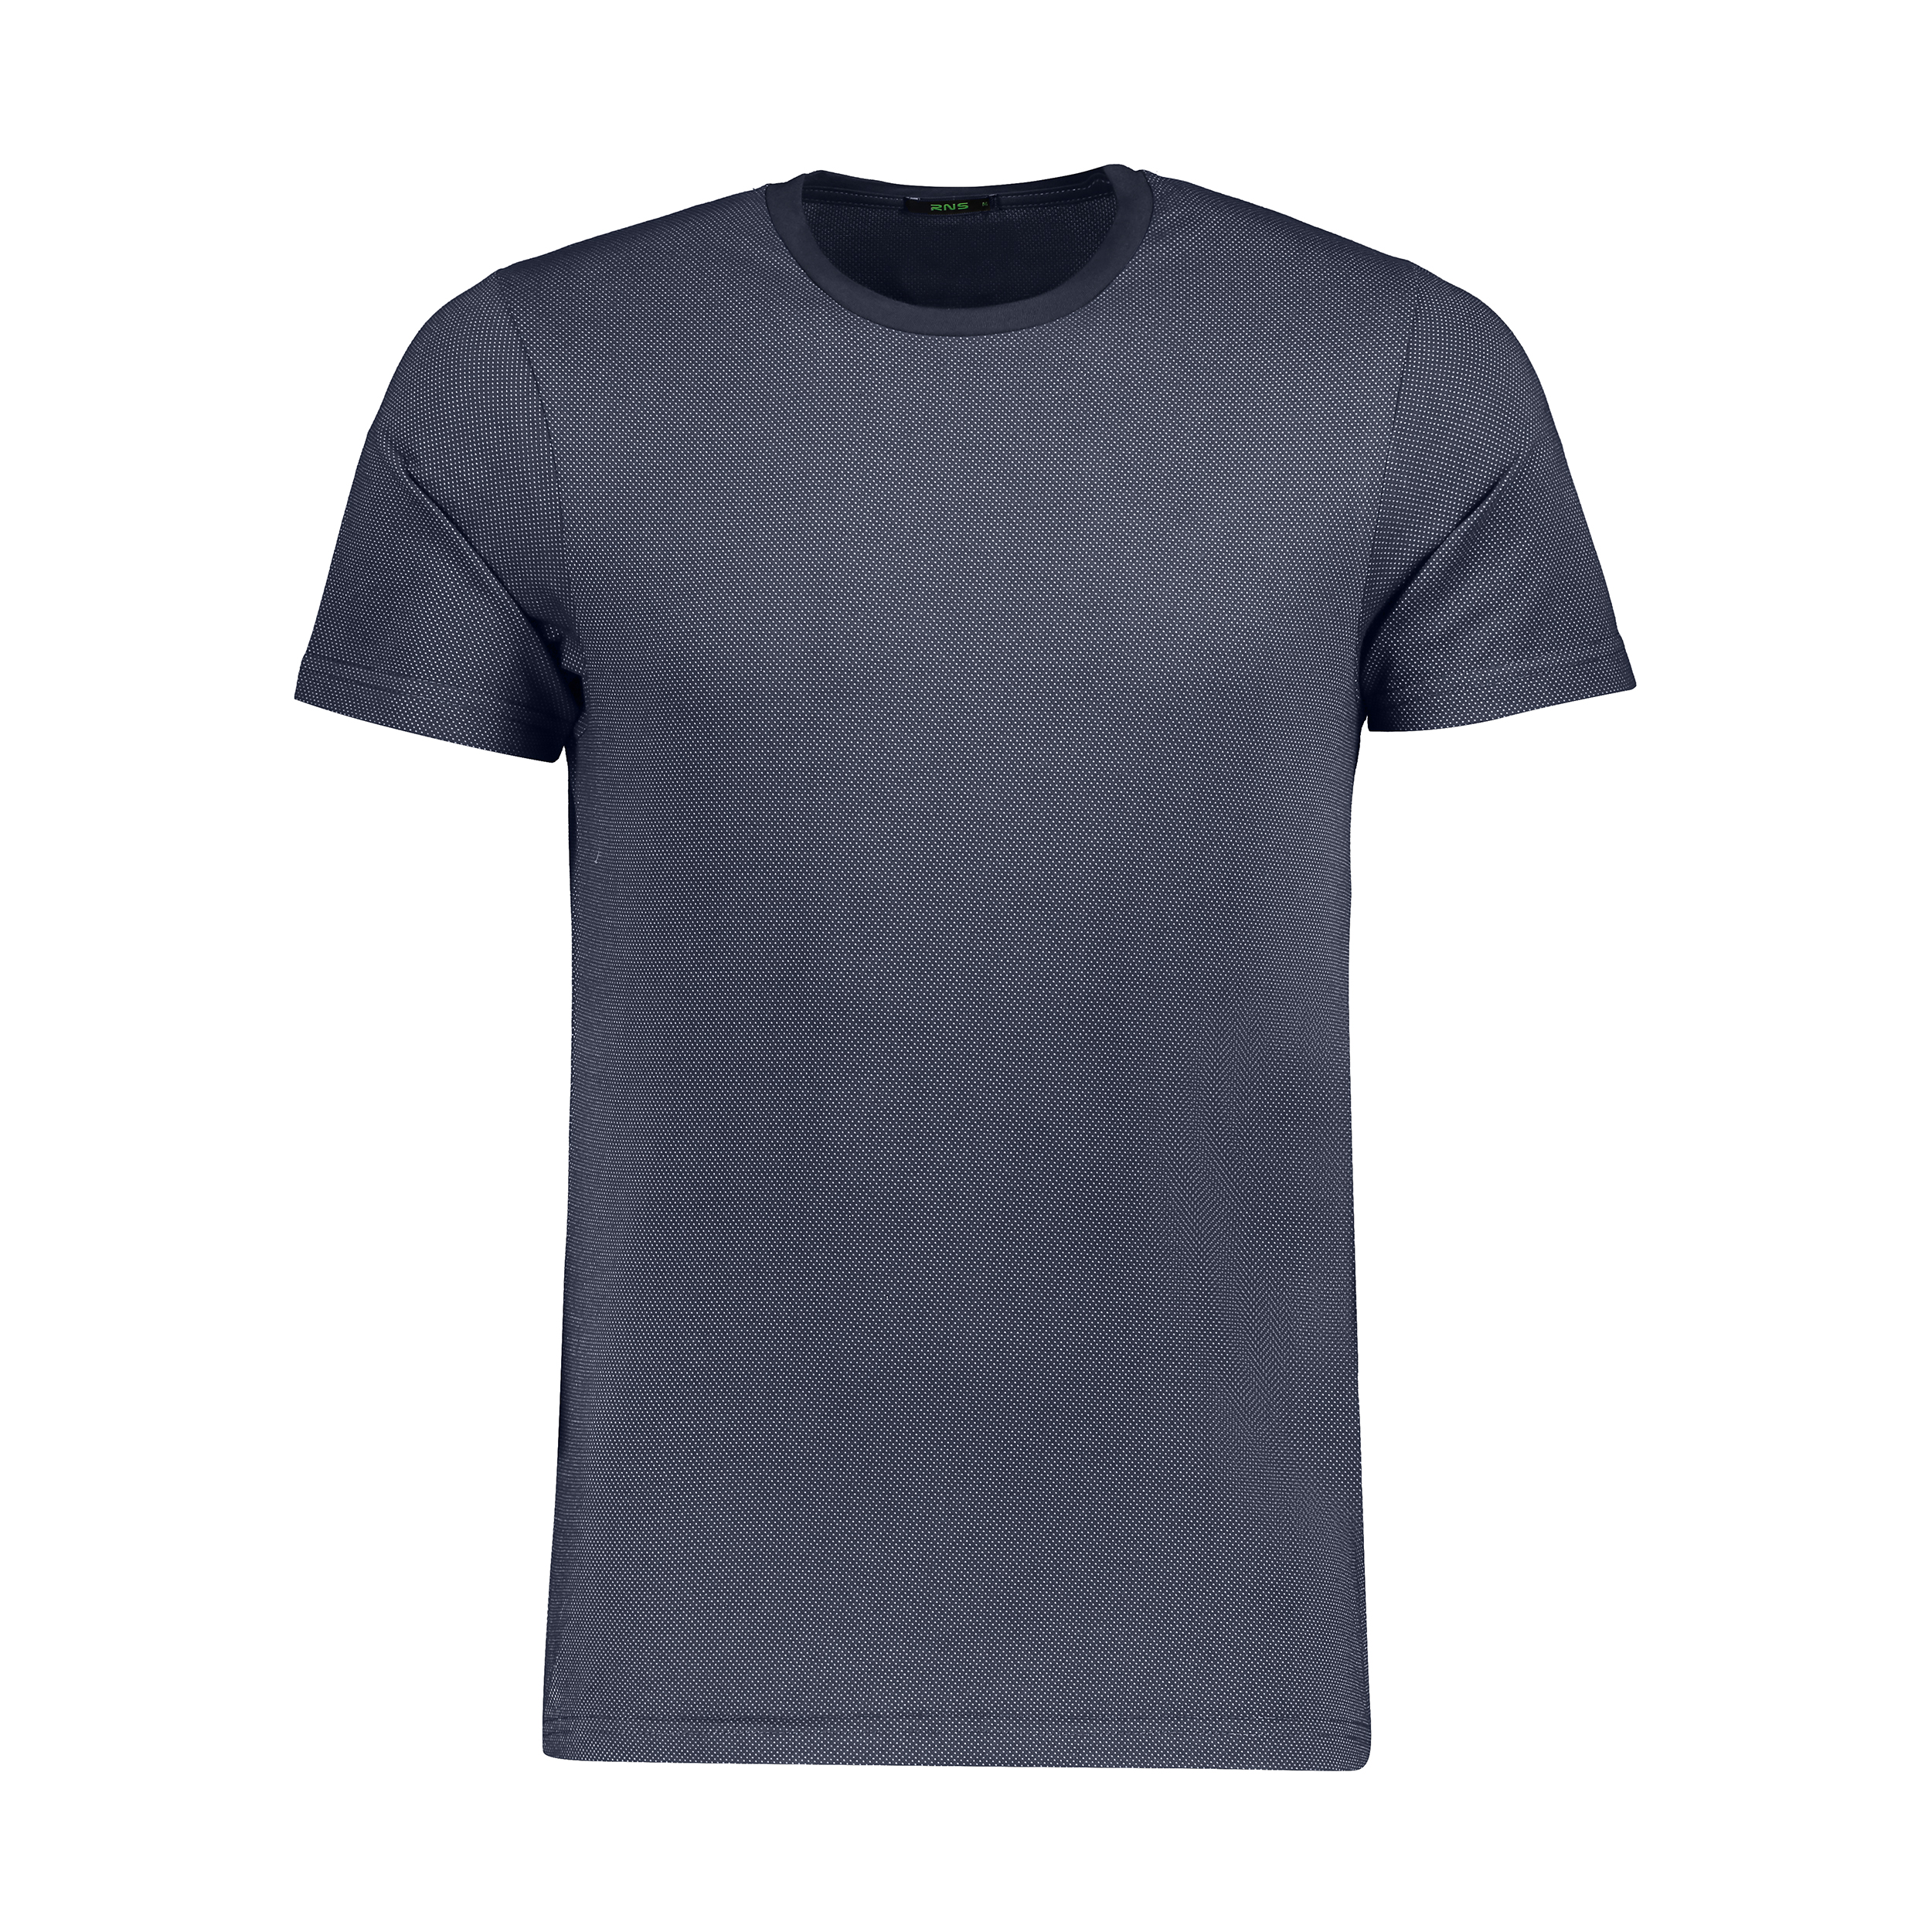 تی شرت مردانه آر ان اس مدل 1131143-59 -  - 1